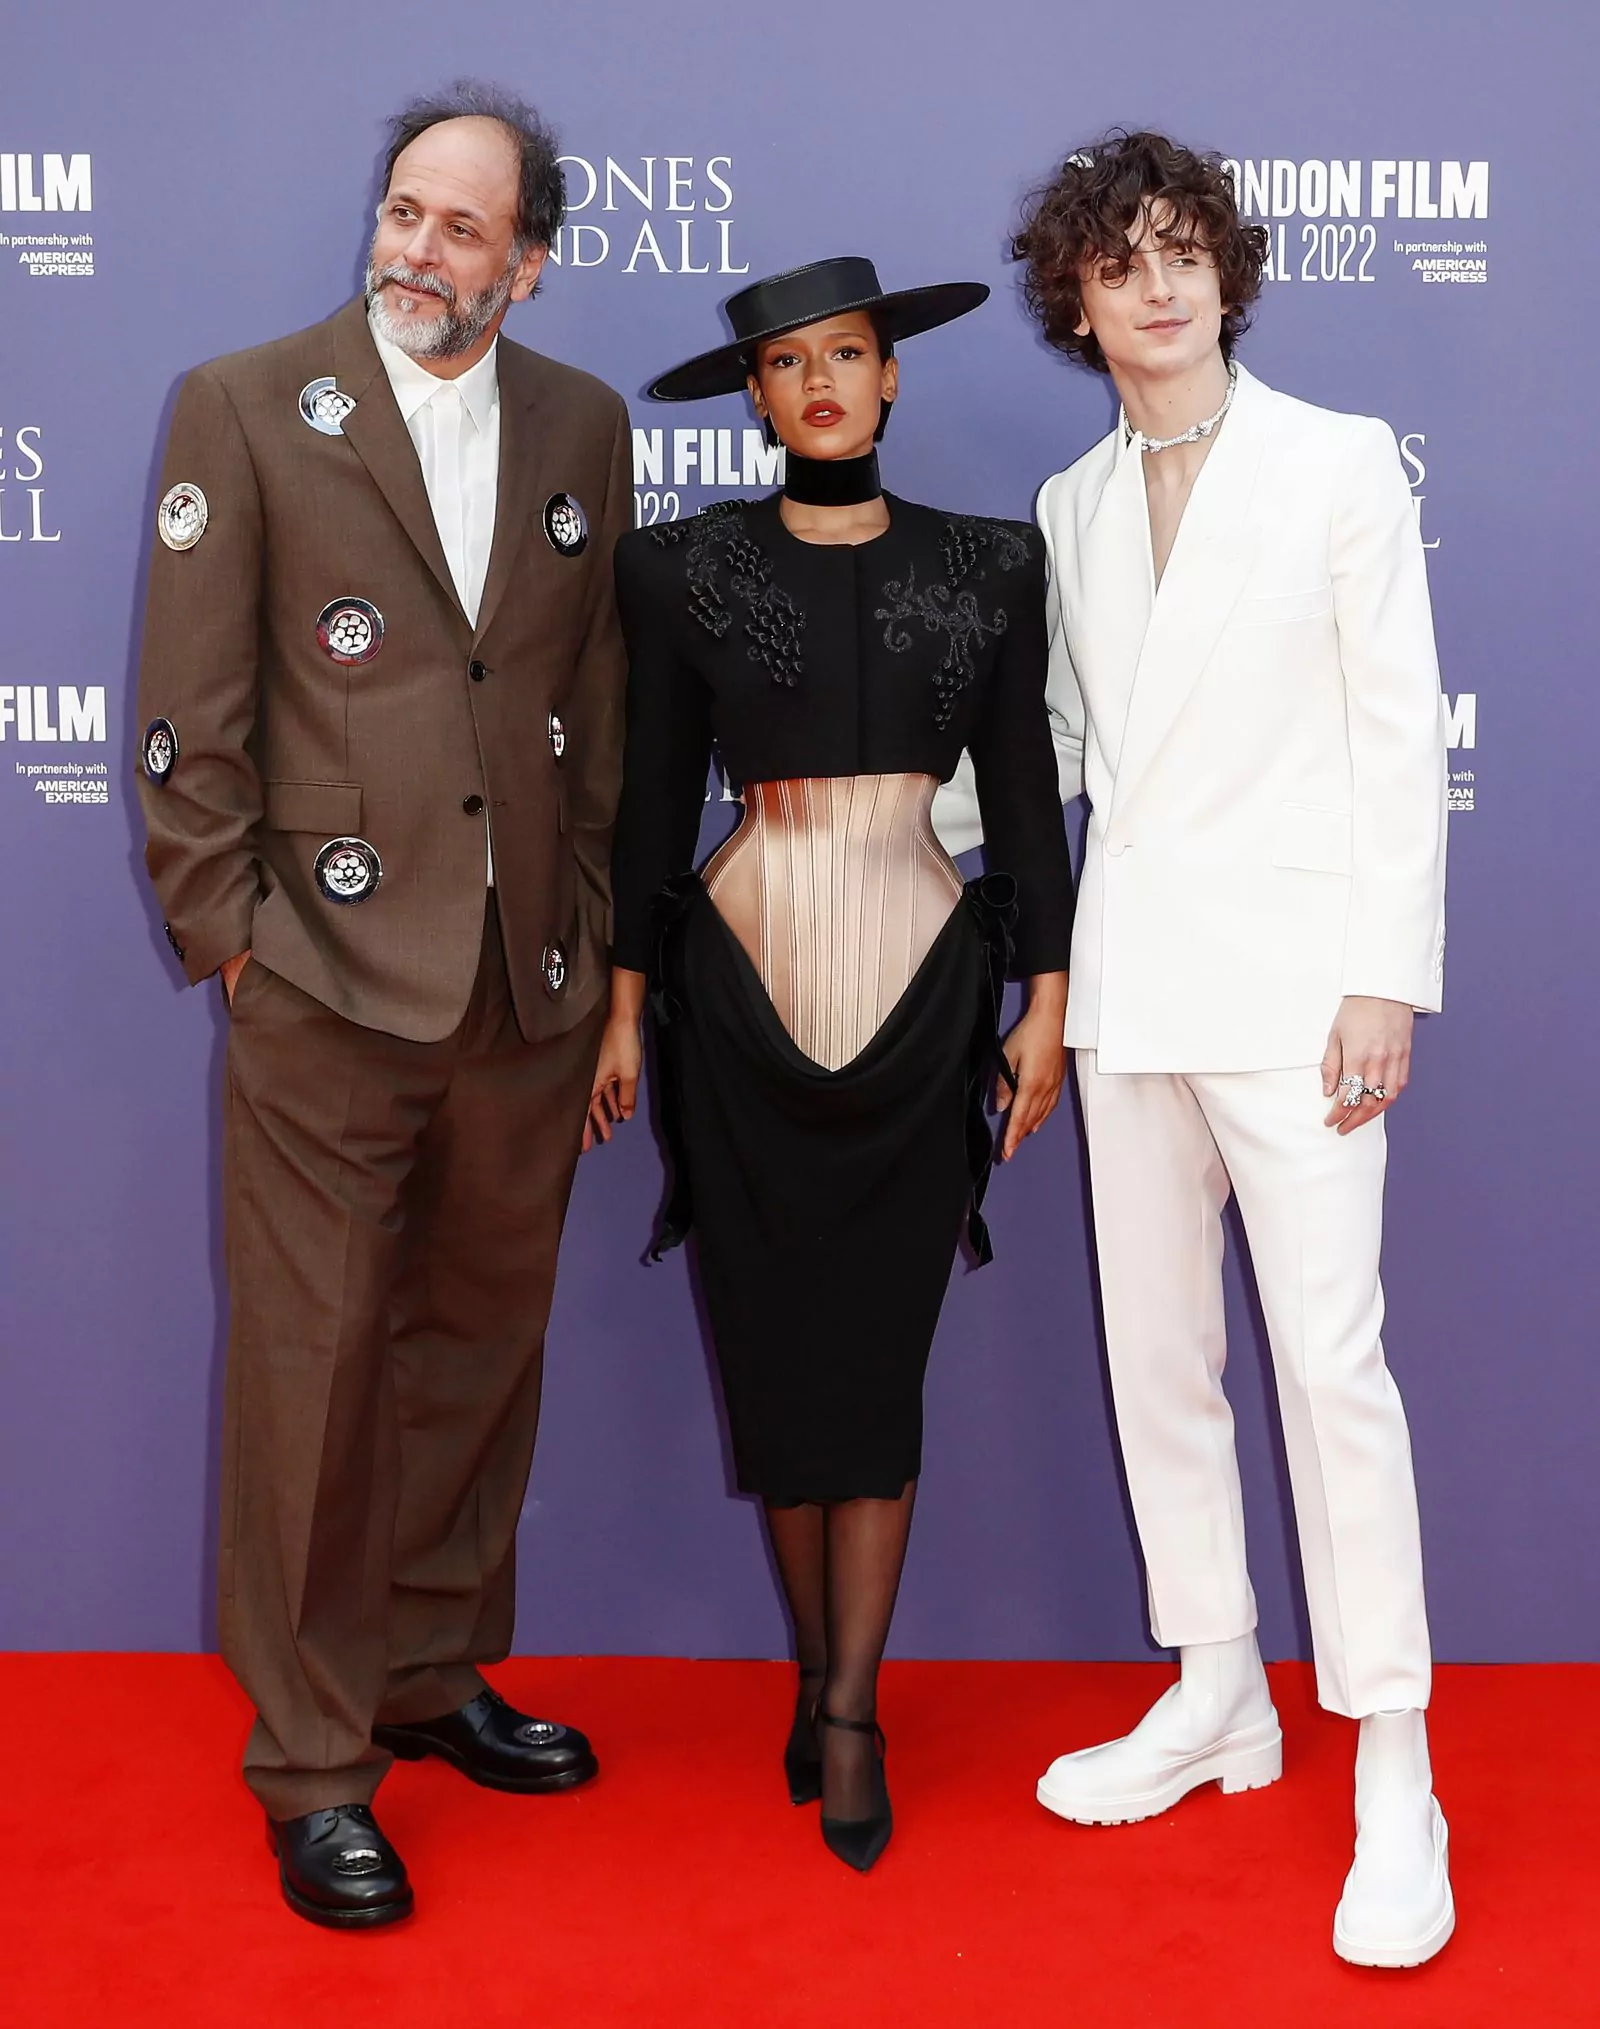 Лука Гуаданьино, Тейлор Расселл и Тимоти Шаламе на красной дорожке фильма «Целиком и полностью» на 66-м Лондонском кинофестивале, 8 октября 2022 г.